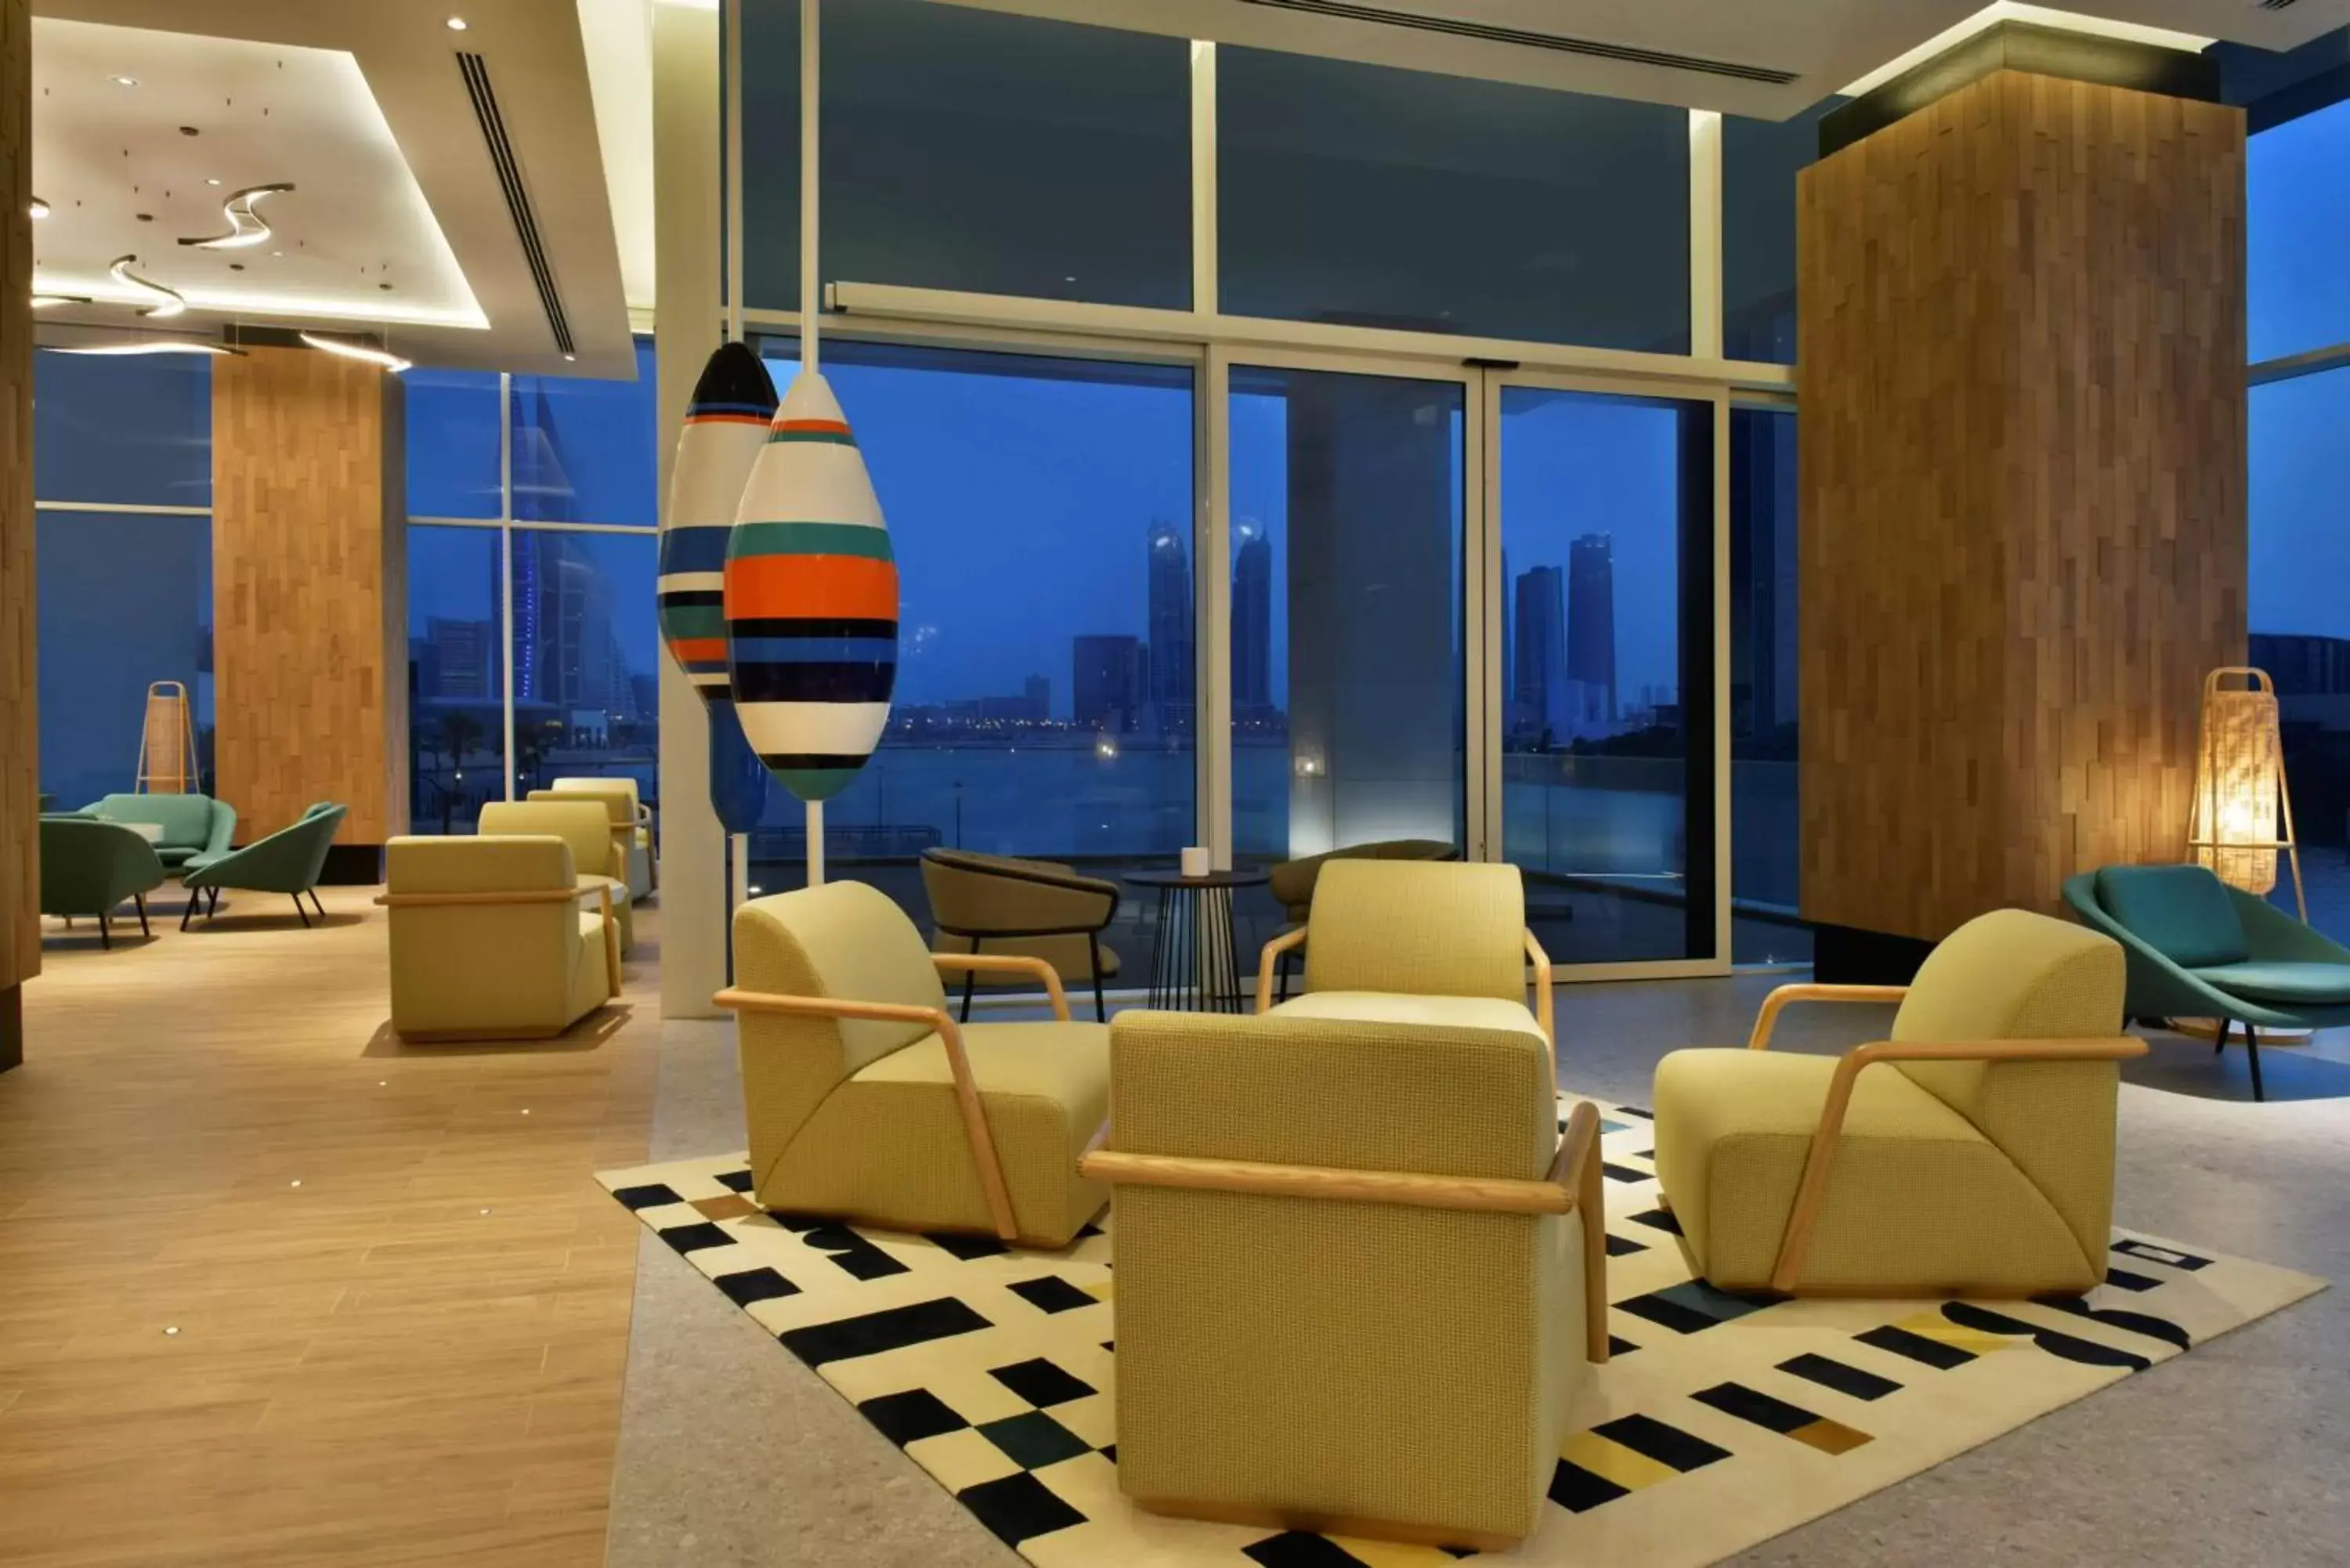 Lobby or reception in Hilton Garden Inn Bahrain Bay